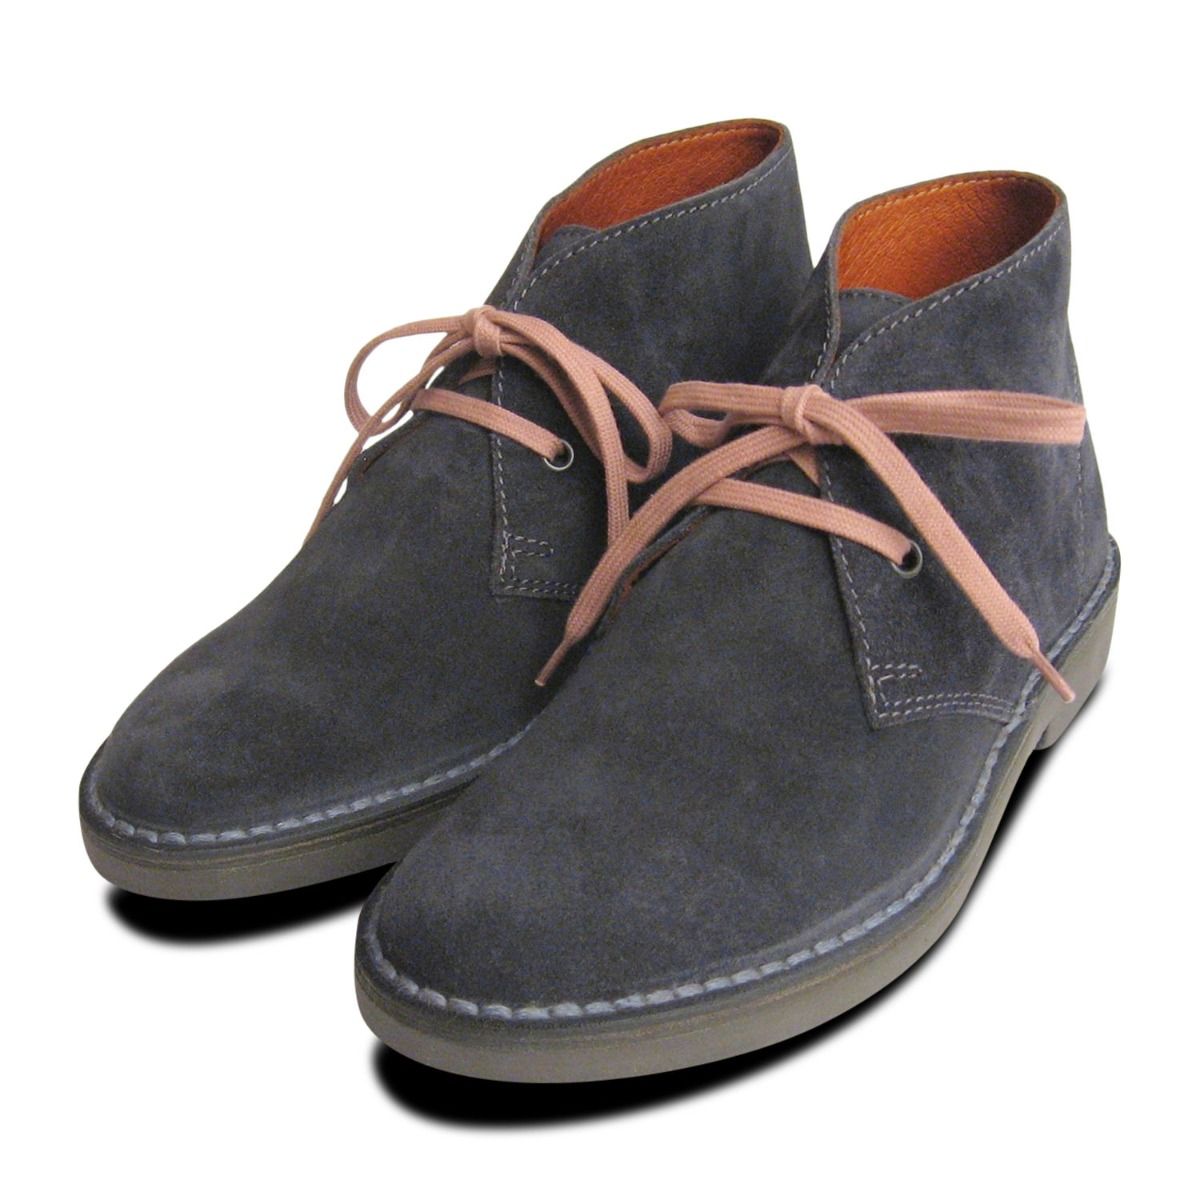 dark grey suede shoes